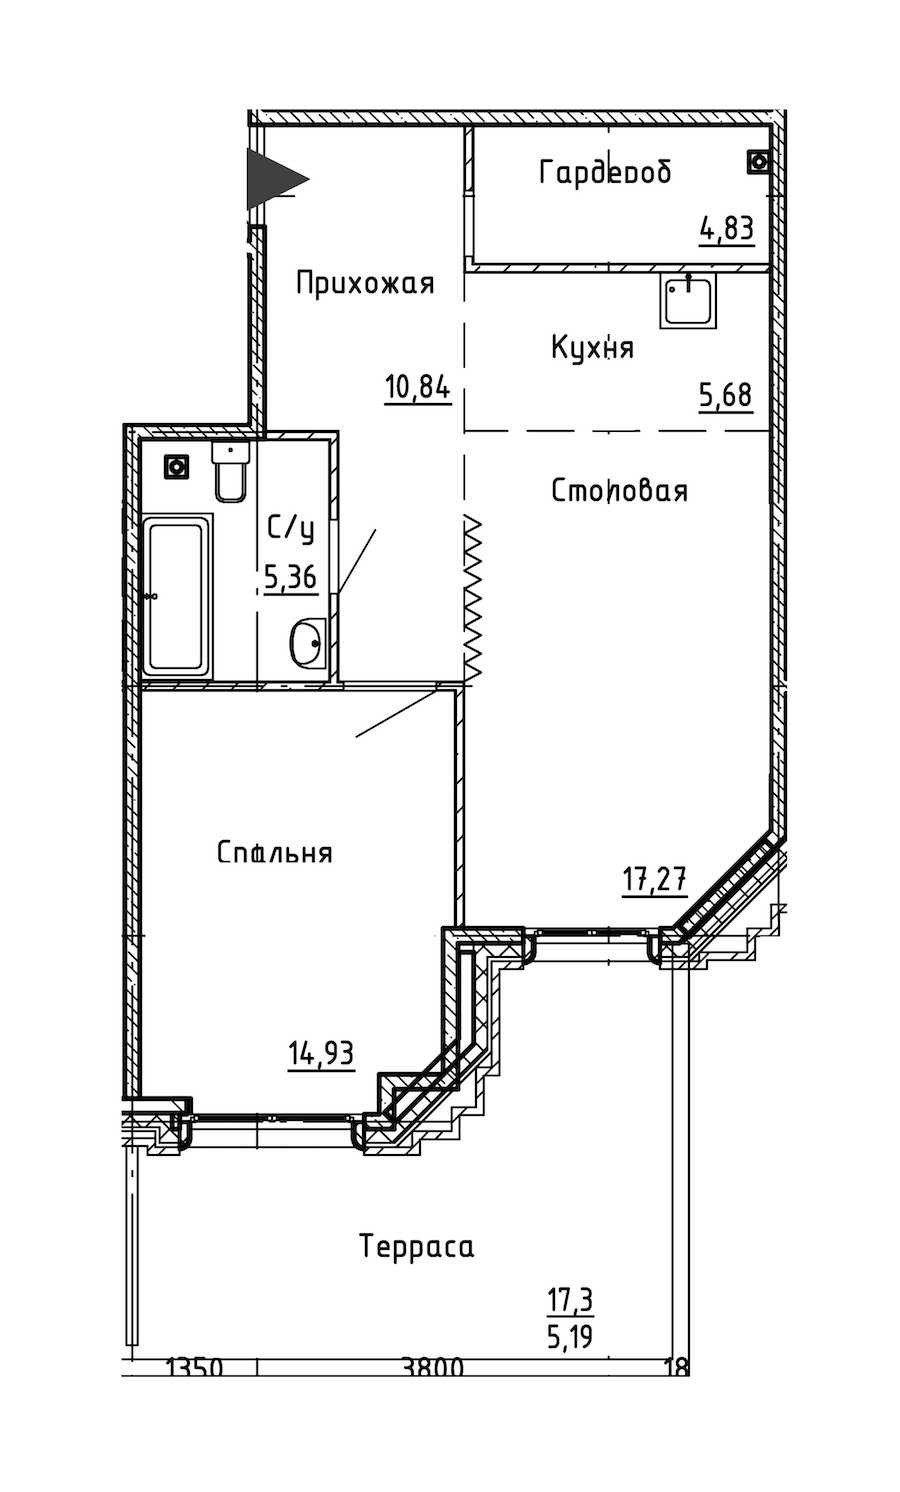 Однокомнатная квартира в : площадь 64.1 м2 , этаж: 2 – купить в Санкт-Петербурге